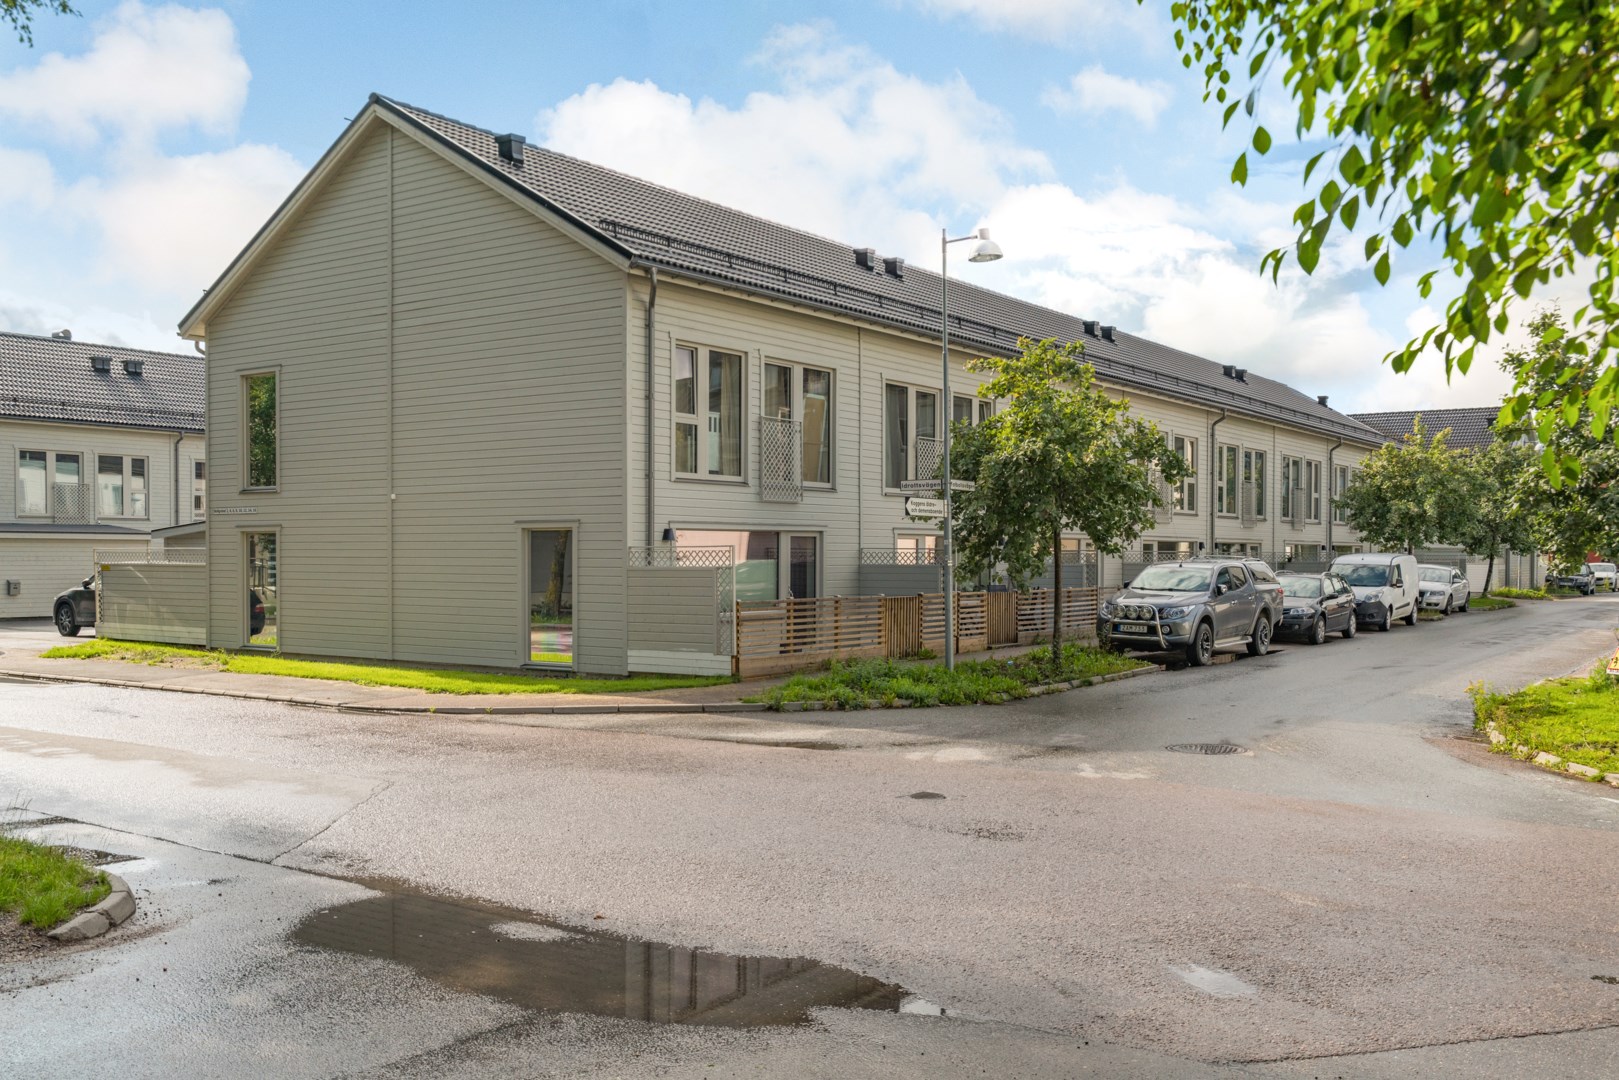 Villa i Brandholmen, Nyköping, Sverige, Bollgränd 8